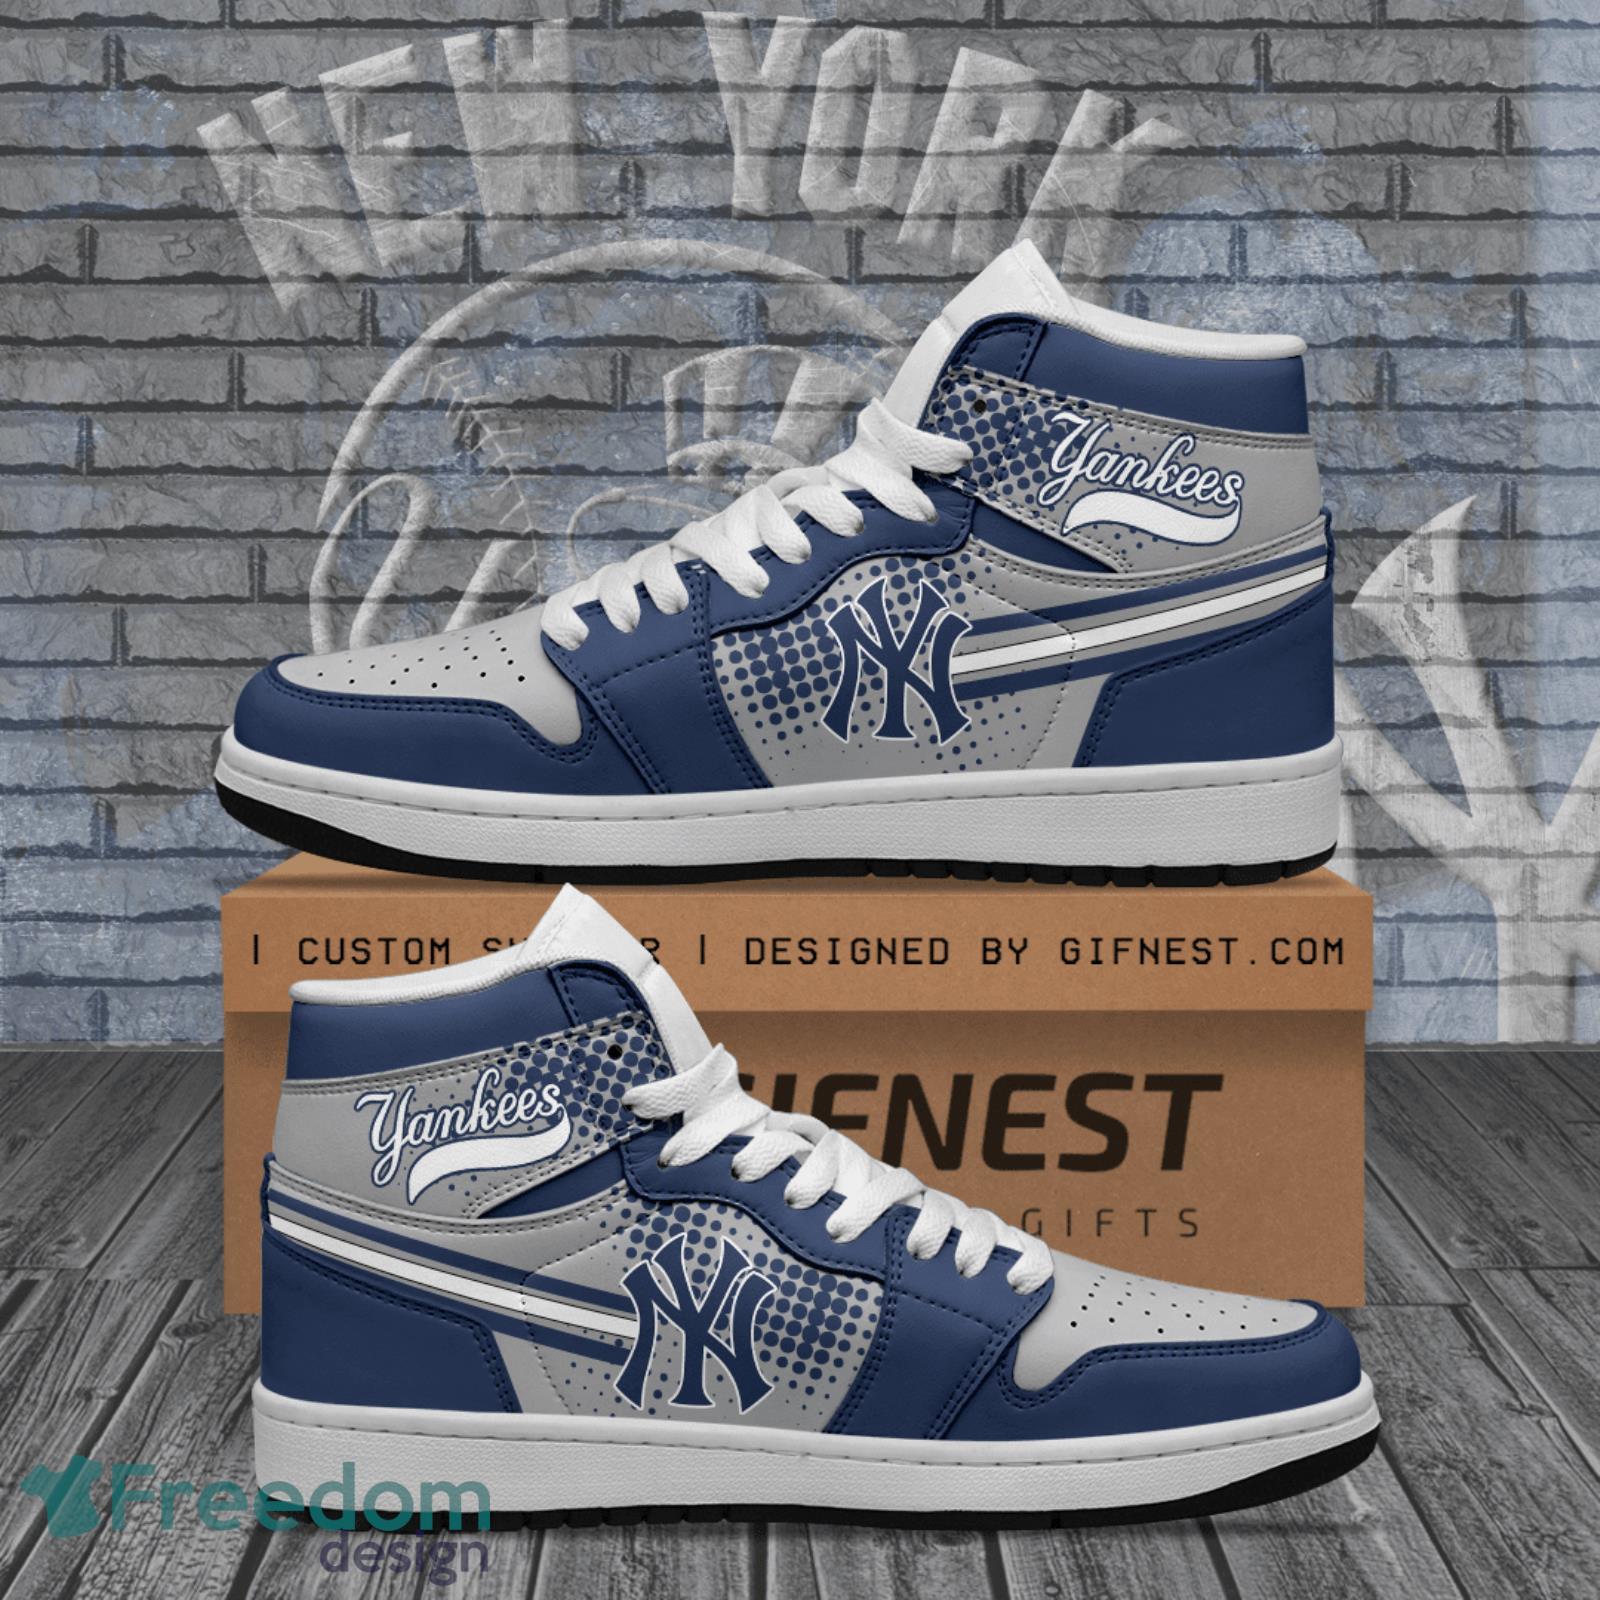 New York Yankees Air Jordan Hightop Shoes Sneaker For Sport Fans